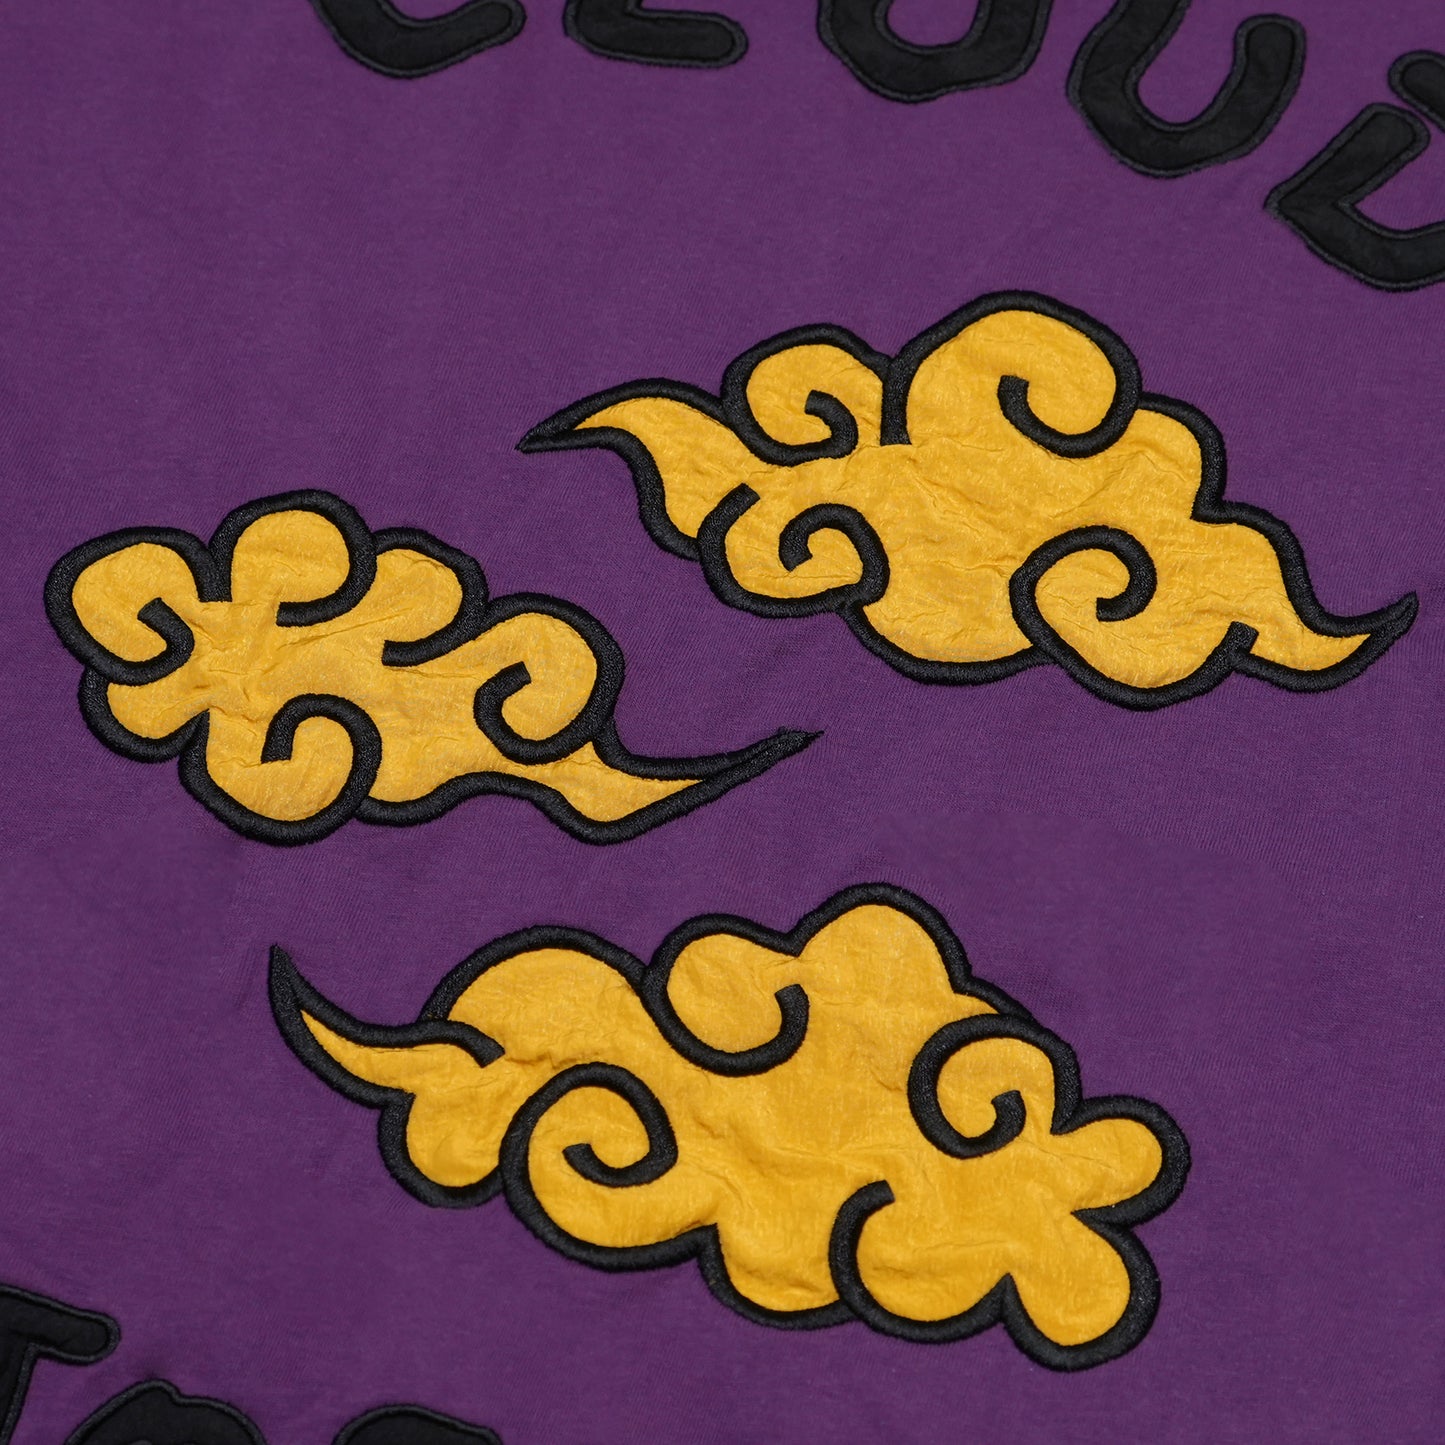 Toson, "Cloud" Patchwork Long Sleeve T-shirt - Purple